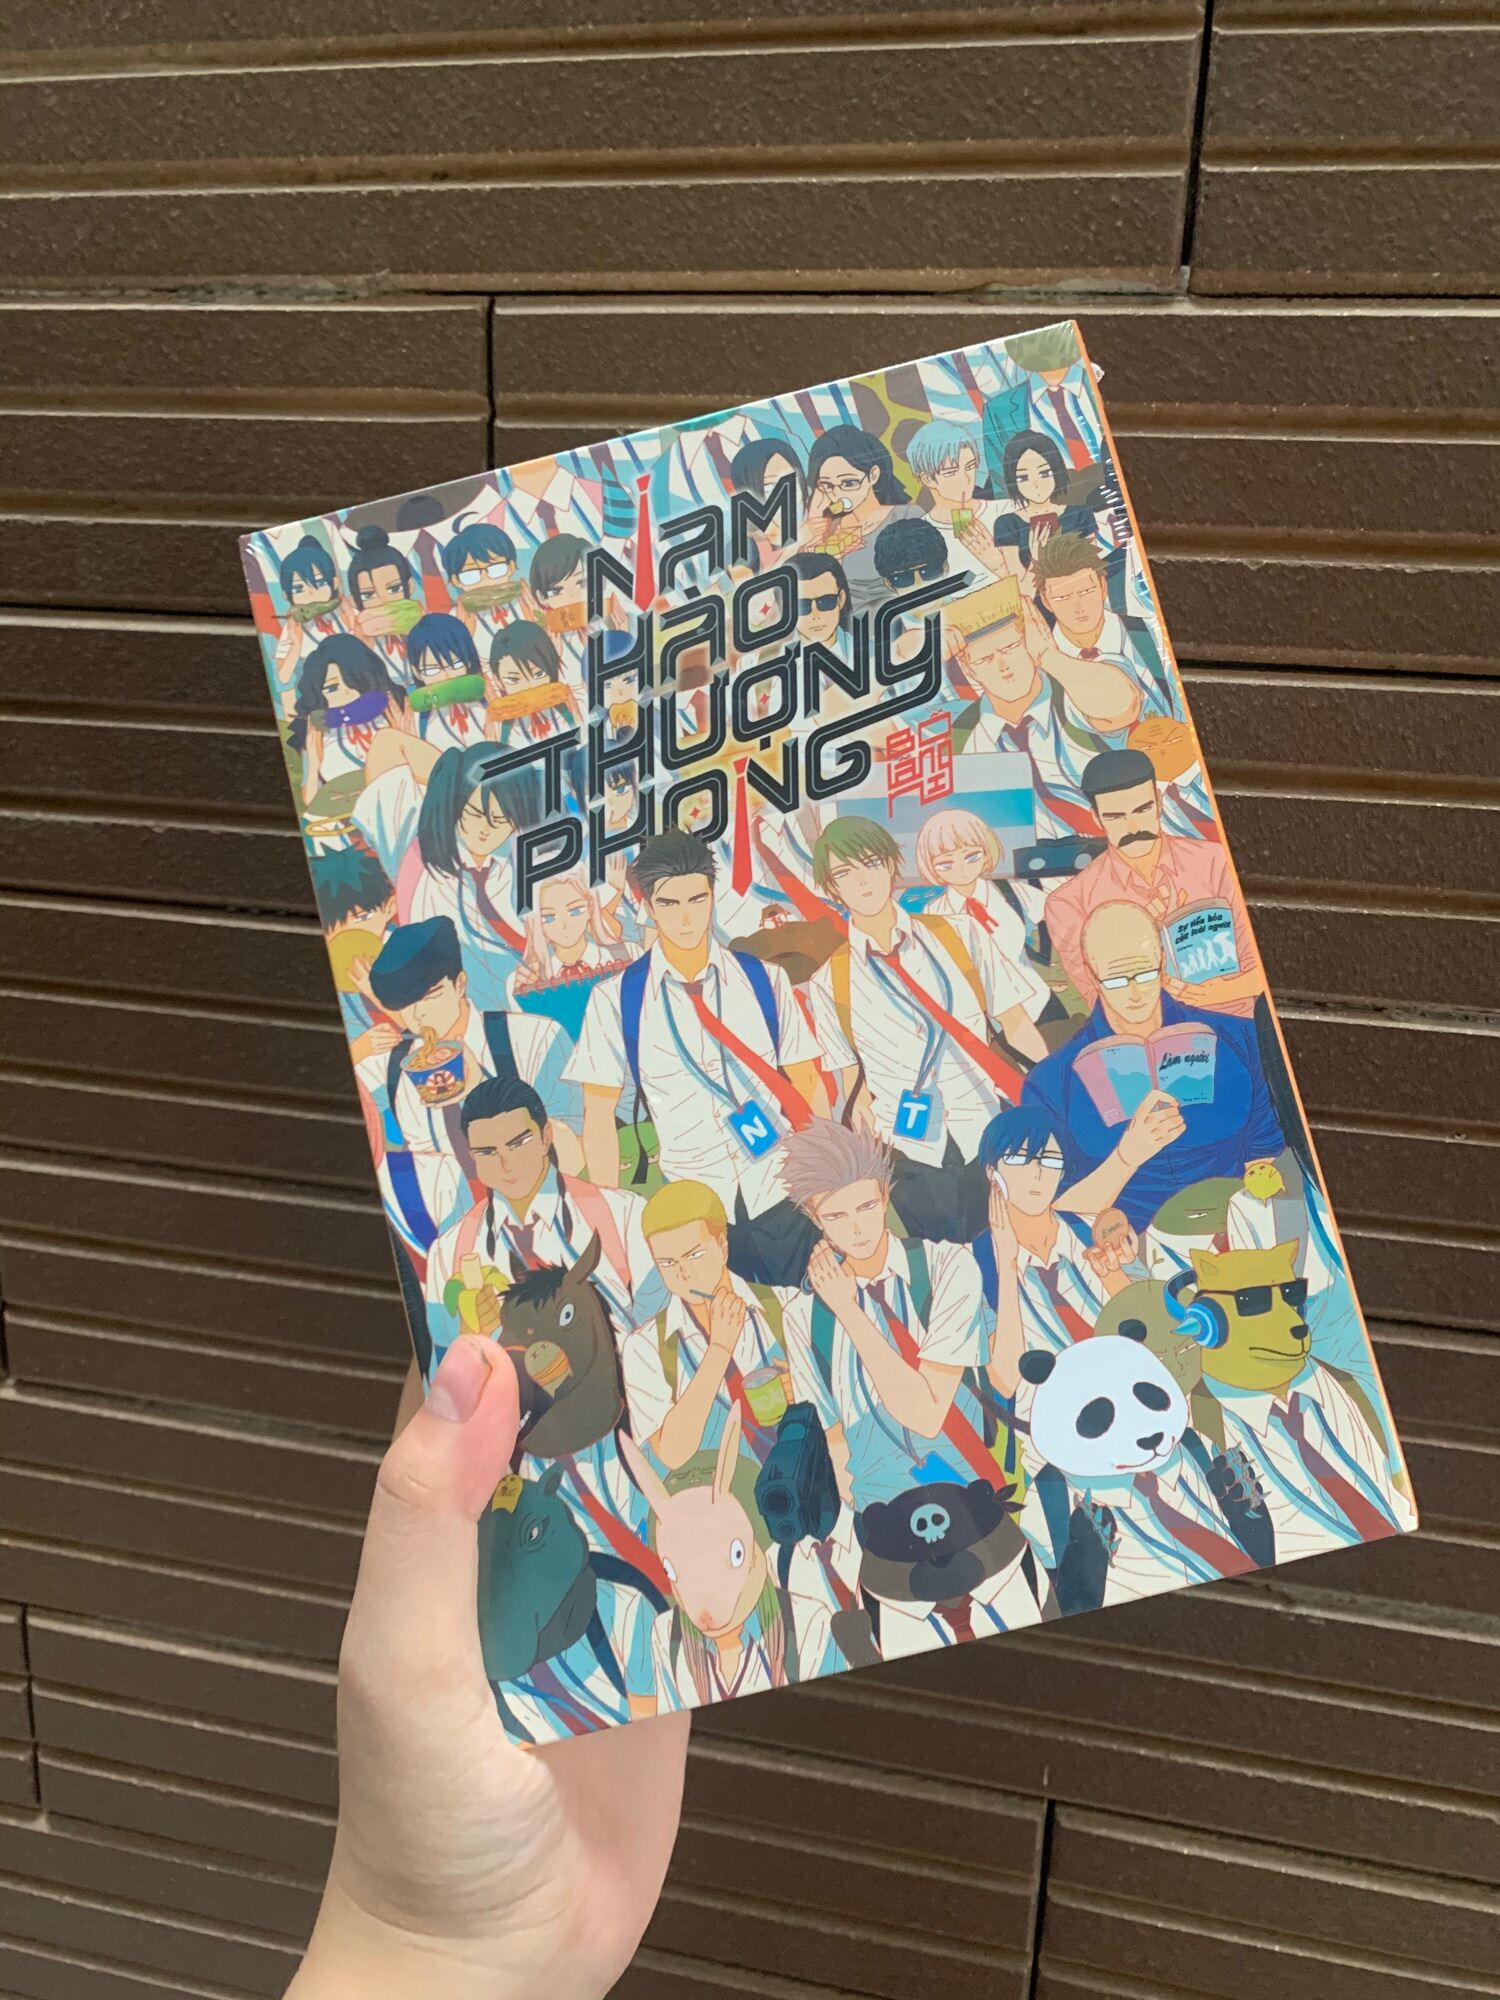 Boxset manga Nam Hào Thượng Phong vol 2 bản sưu tầm